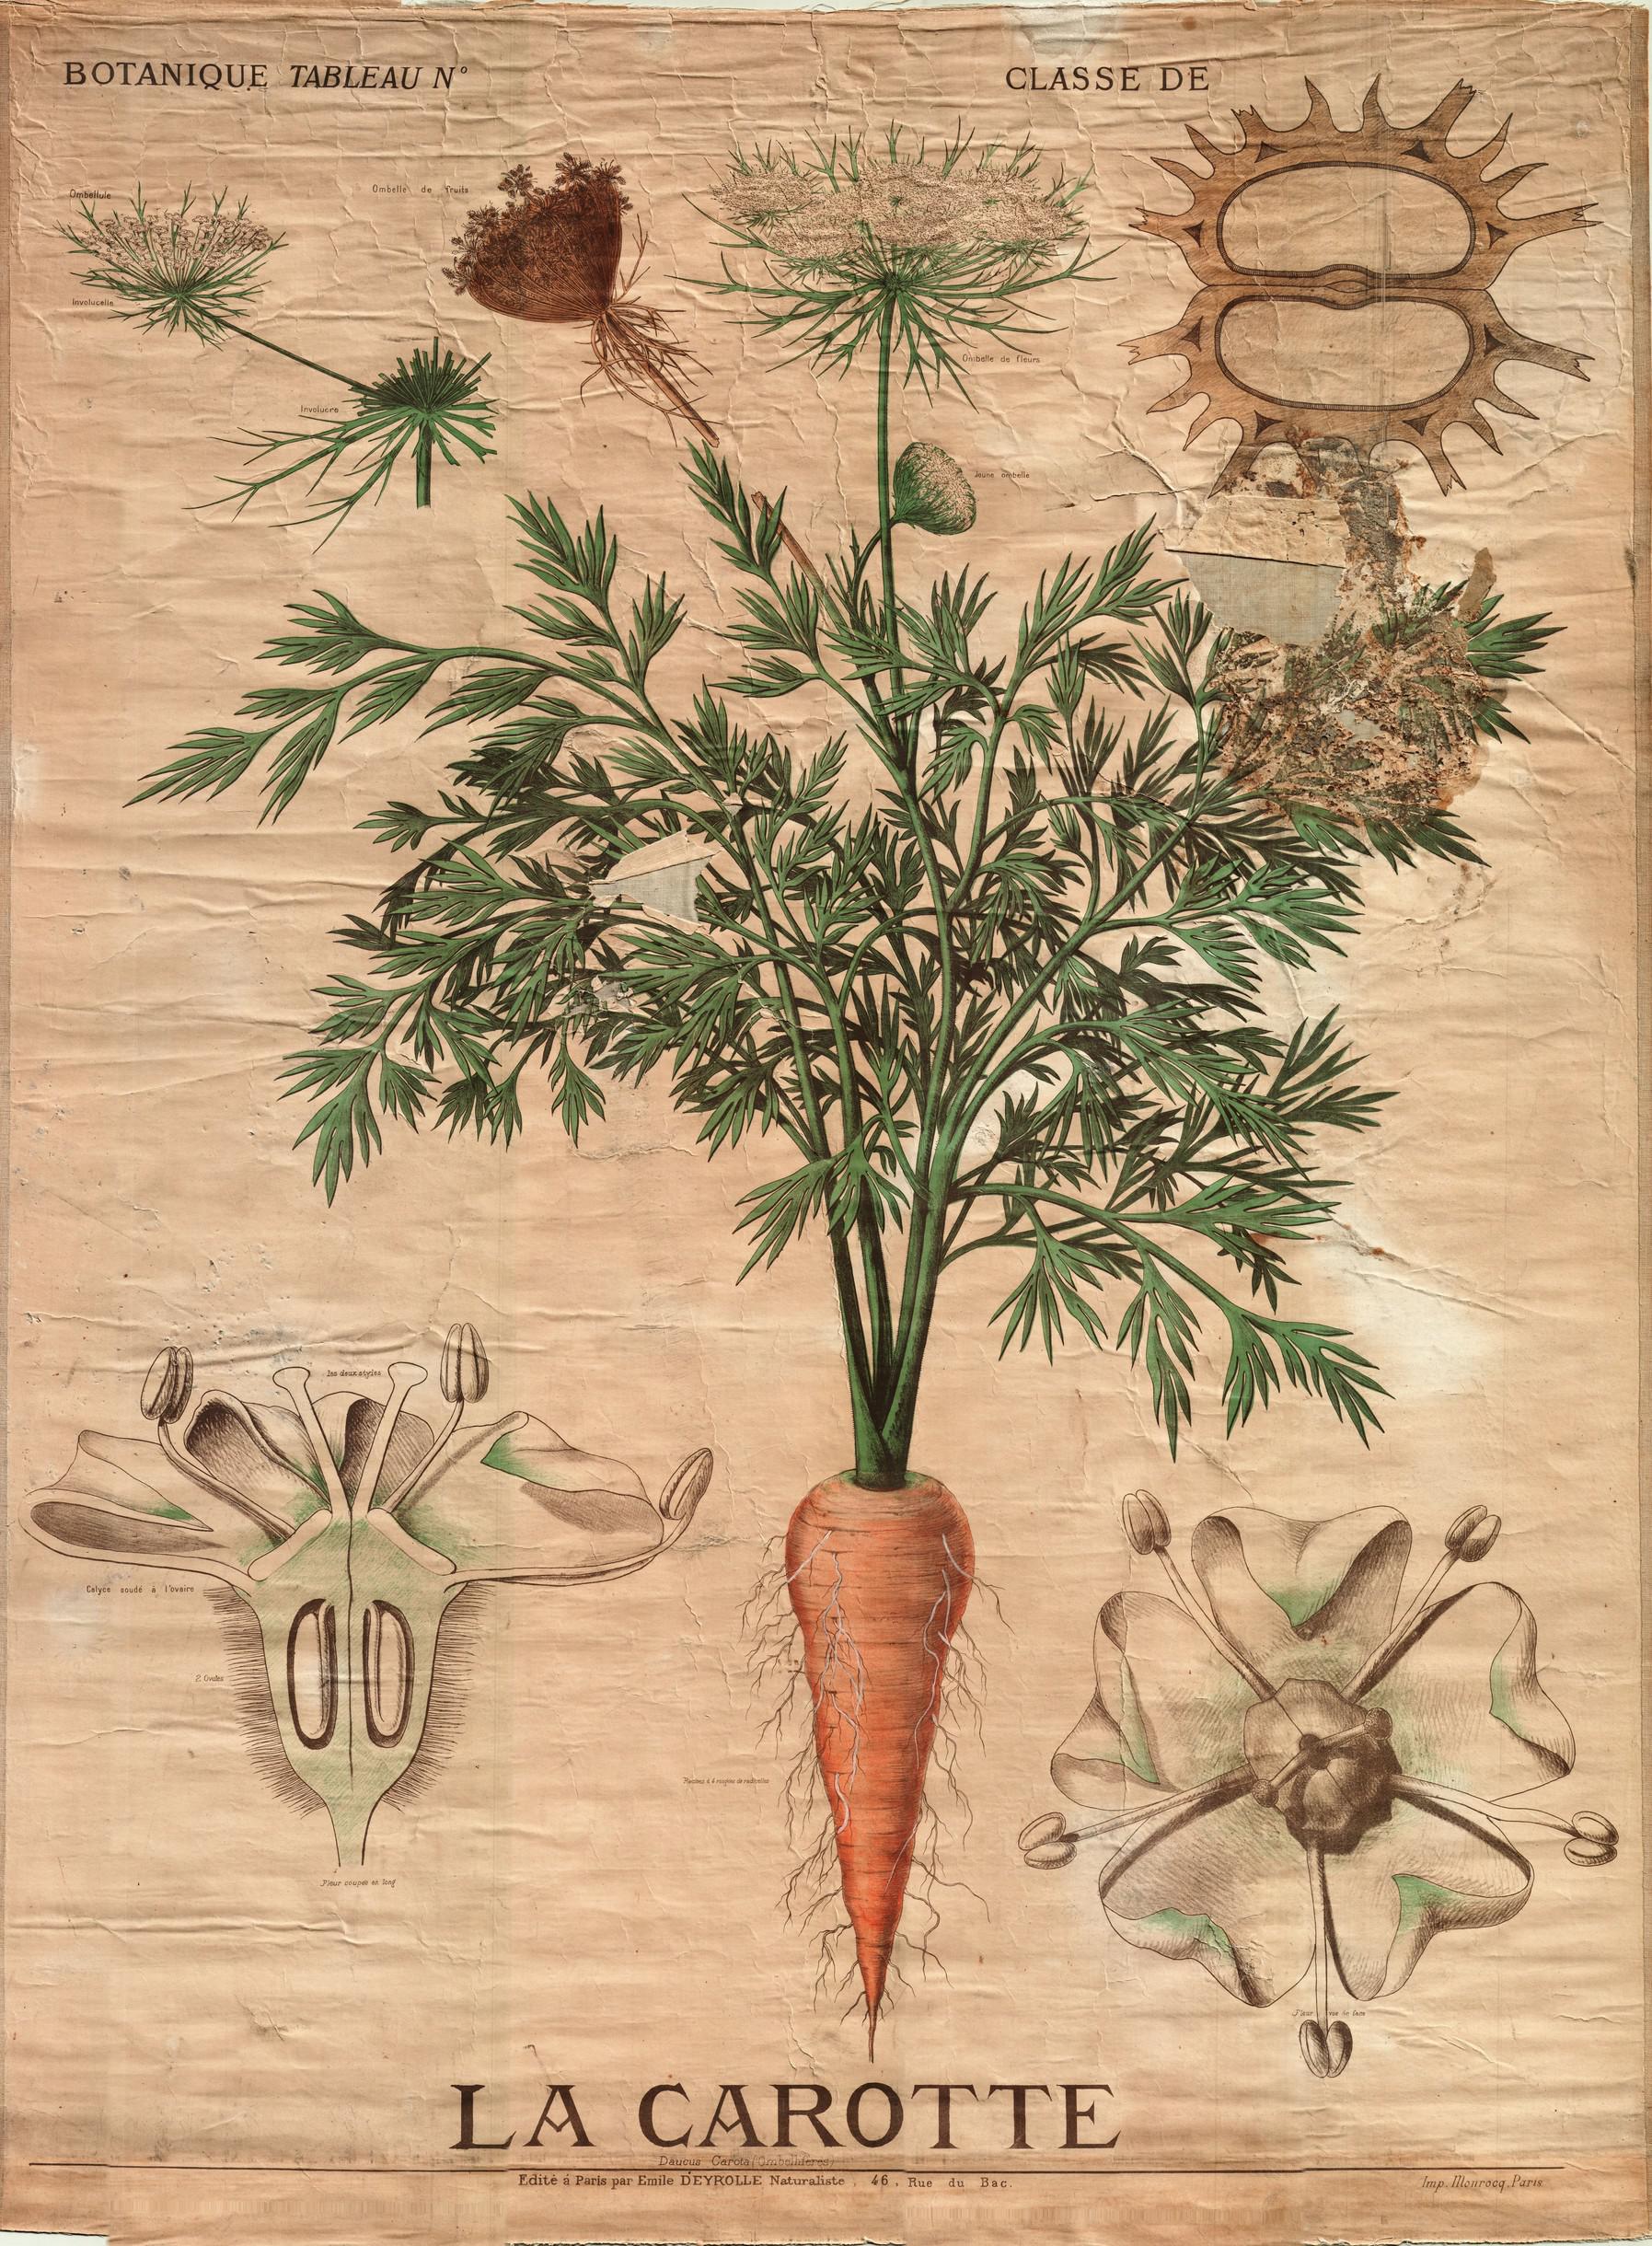 Résultat de recherche d'images pour "planches botaniques deyrolle"